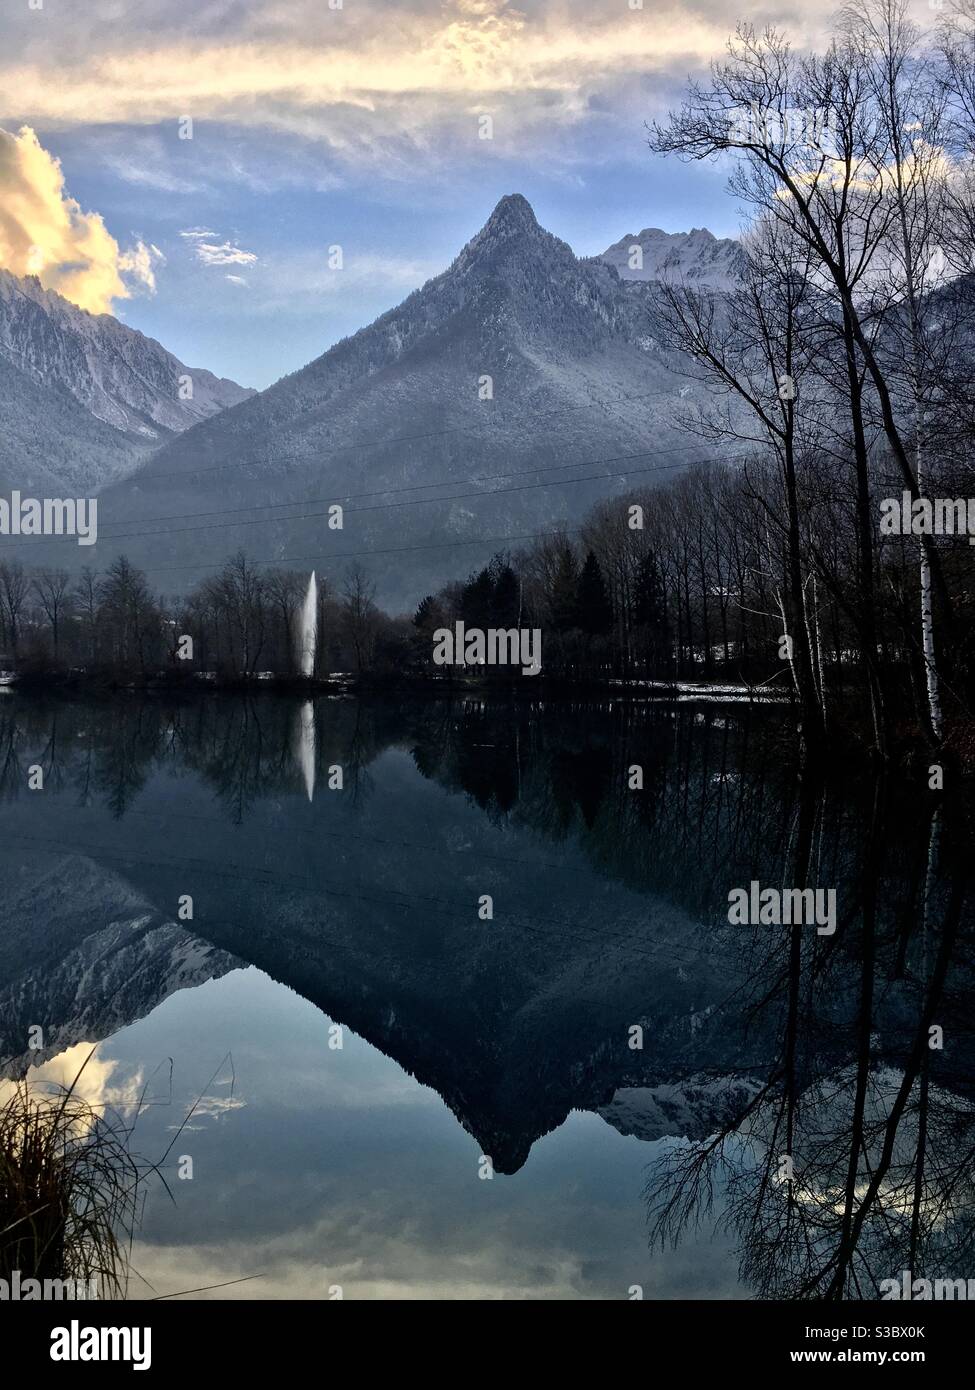 Reflets de la montagne mauriennaise dans le Lac Bleu de la base de loisirs de Saint-Rémy-de-Maurienne en Savoie un soir d’hiver Foto Stock